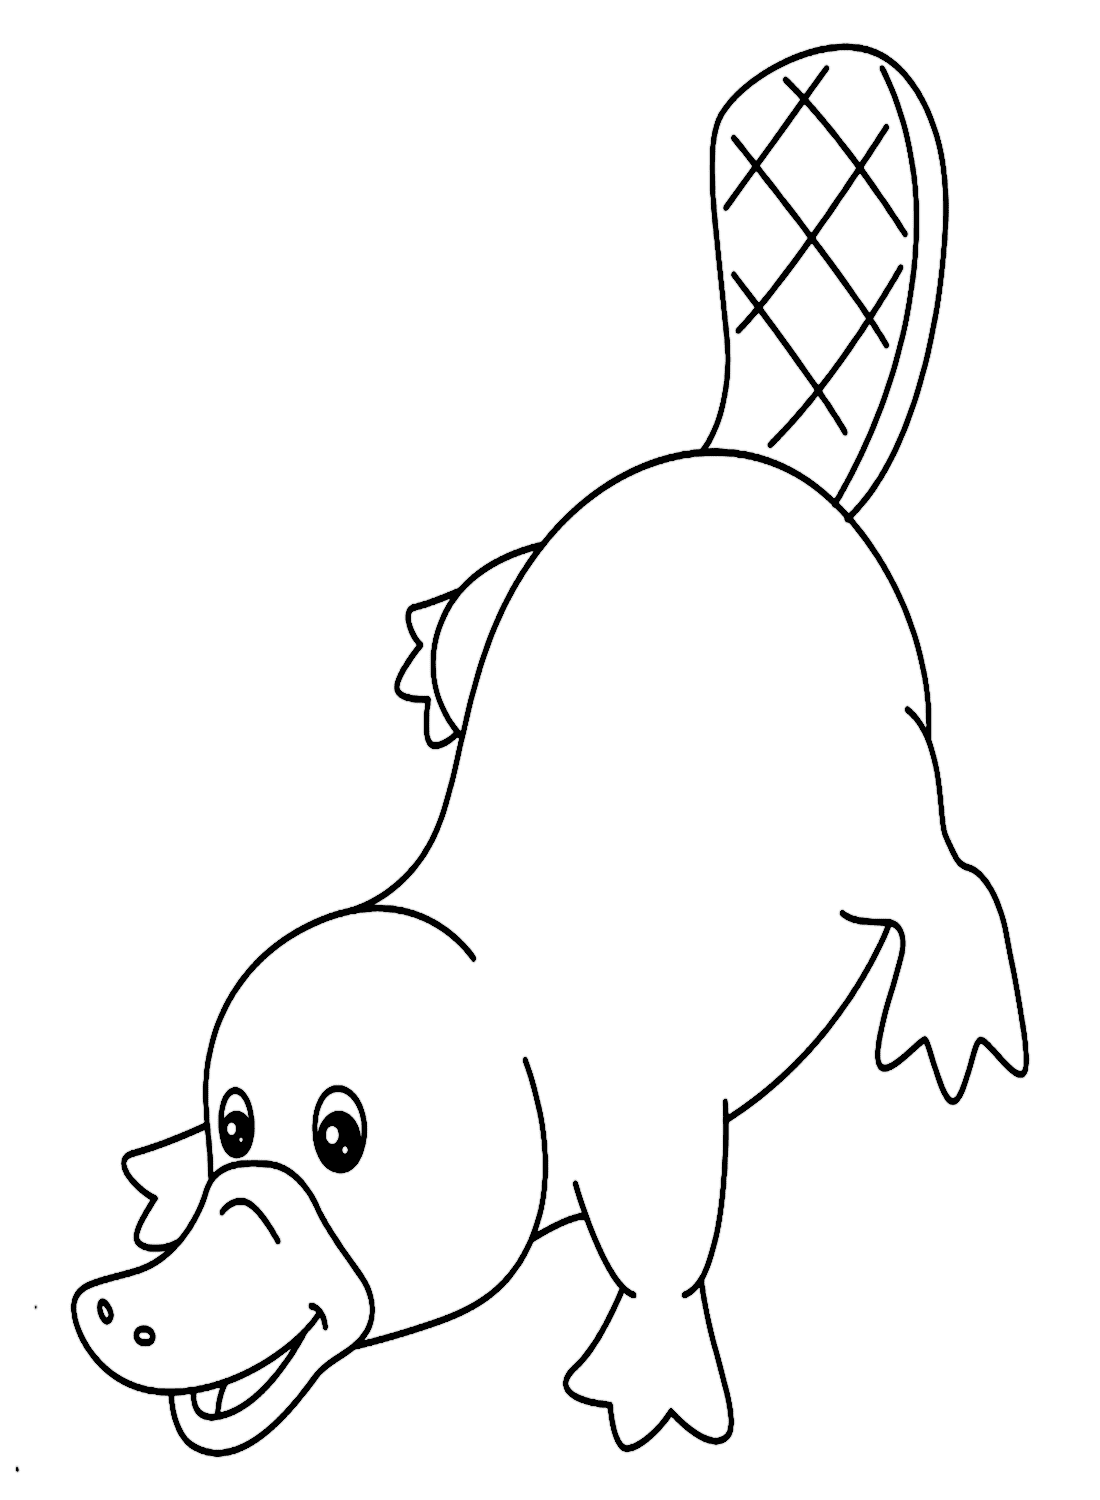 Schema di ornitorinco da Platypus